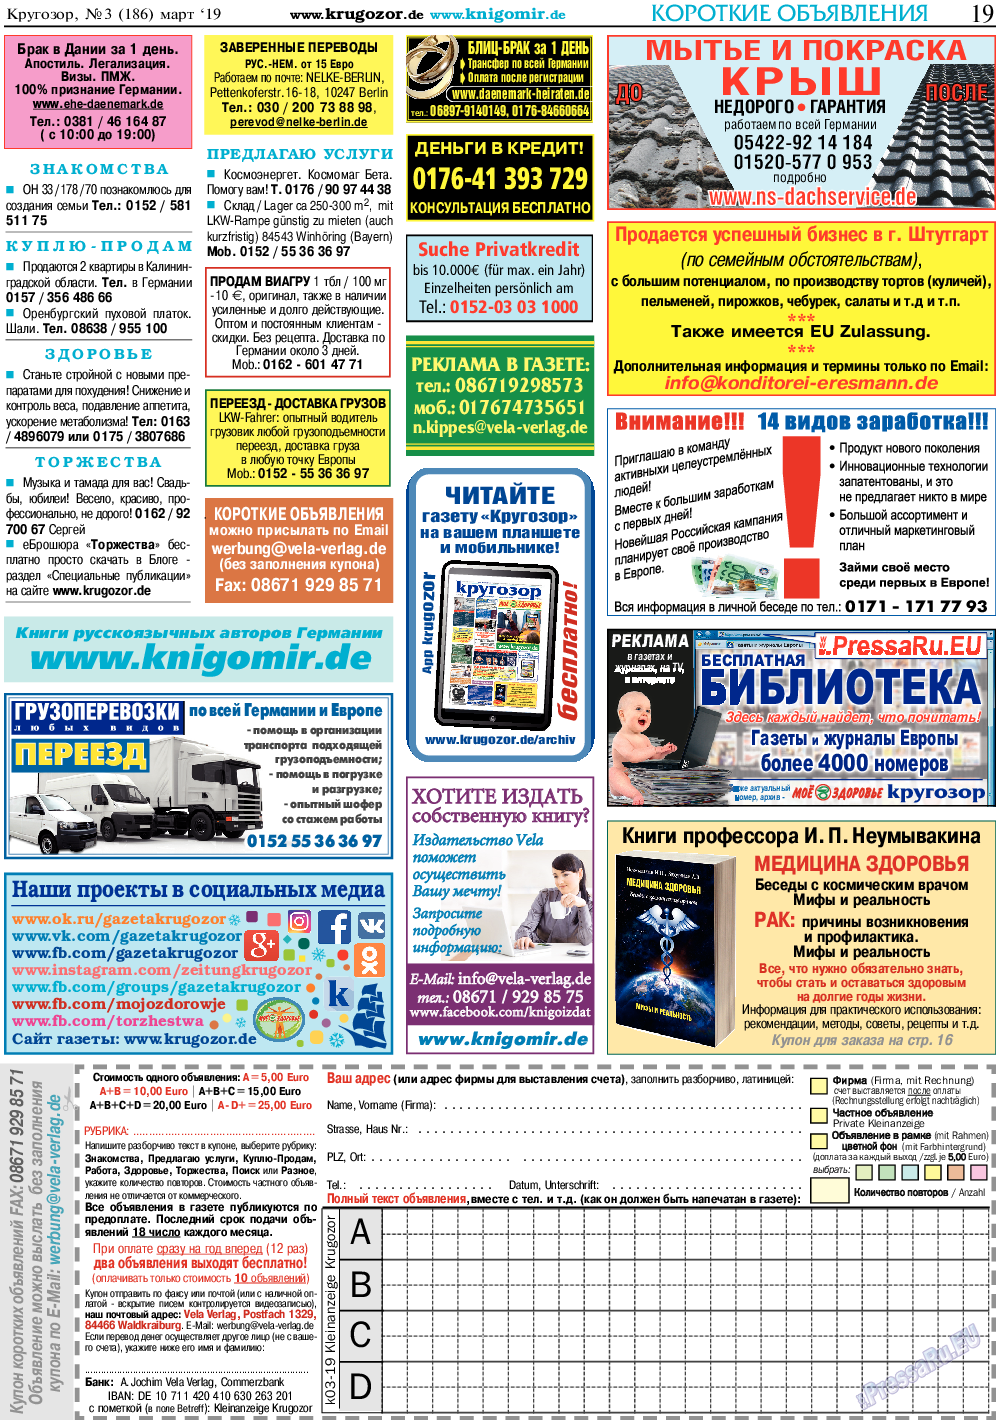 Кругозор, газета. 2019 №3 стр.19